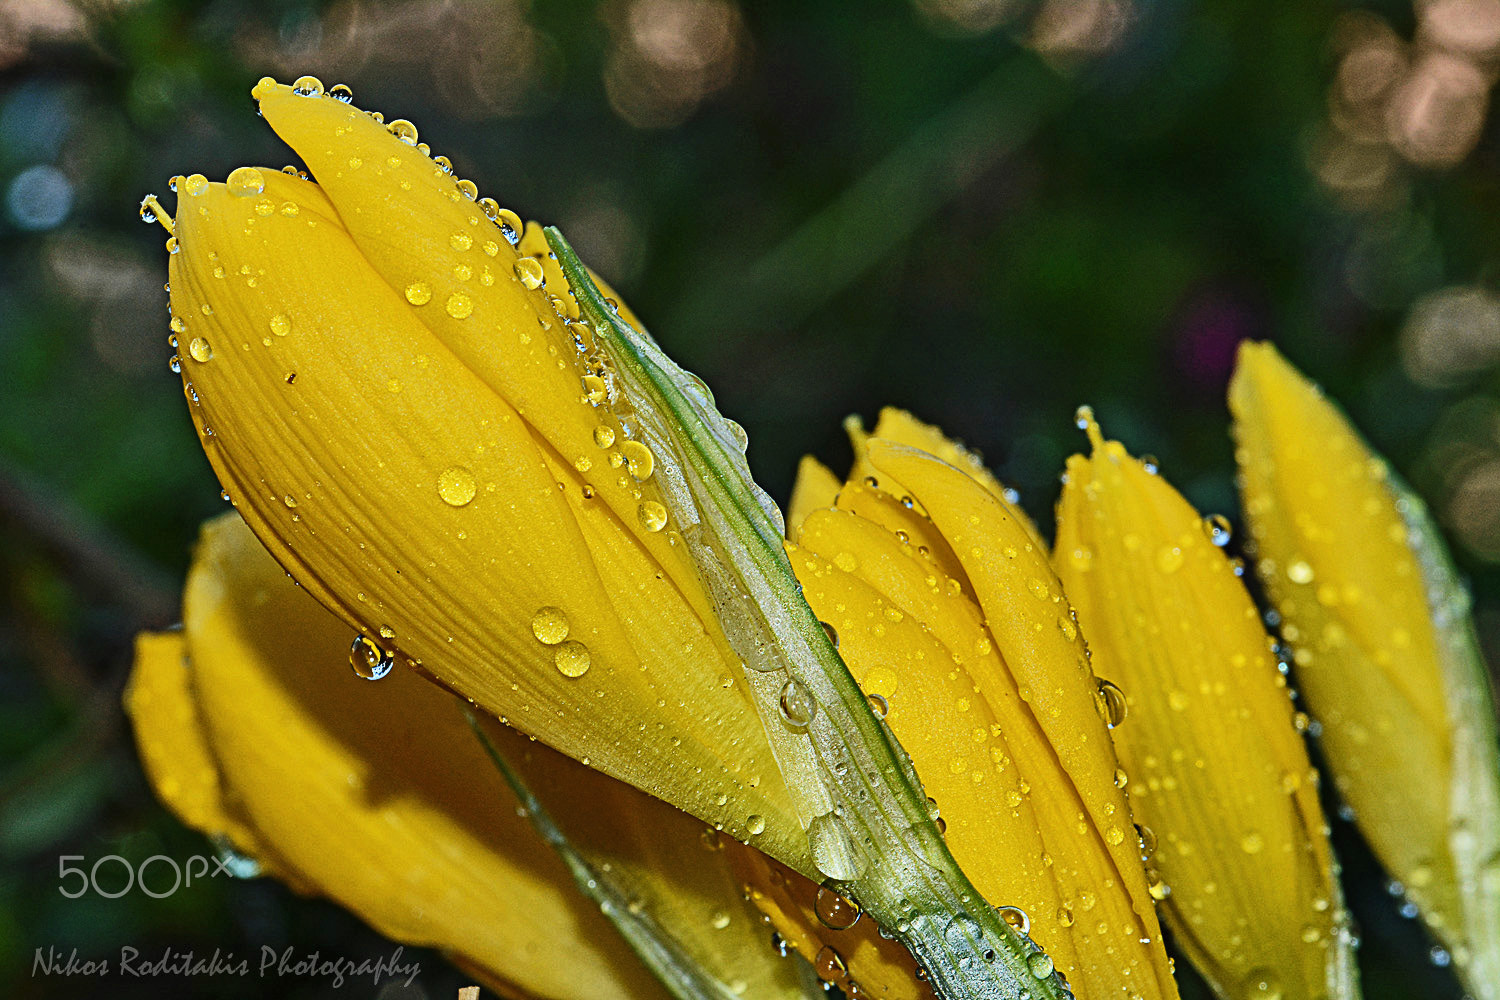 Nikon D5200 + AF Nikkor 20mm f/2.8 sample photo. Sternbergia lutea under the rain photography